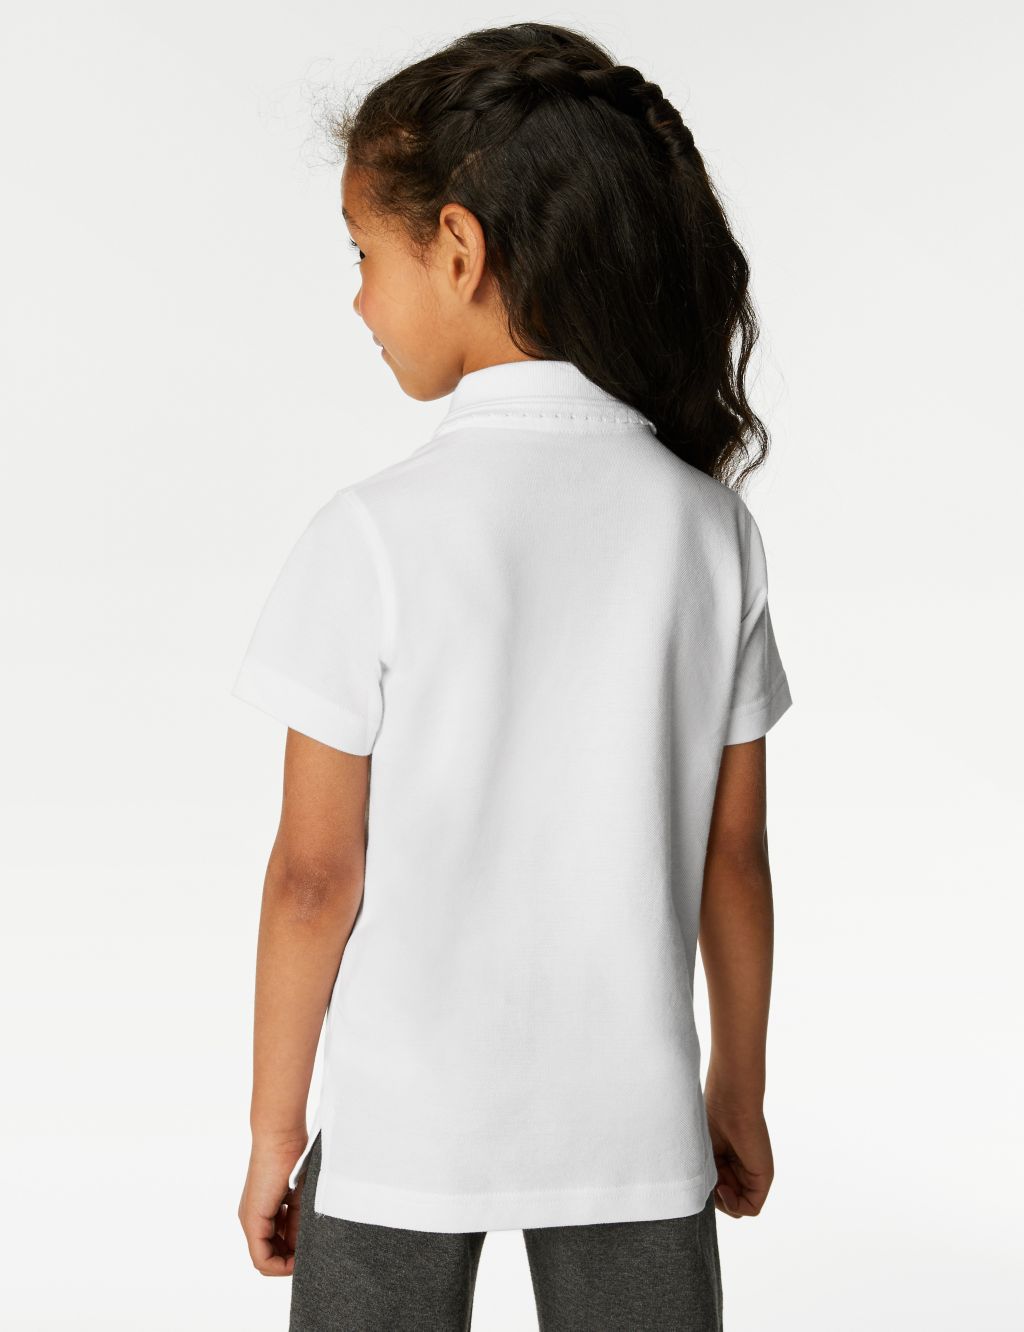 2pk Girls' Slim Fit School Polo Shirts (2-16 Yrs) image 4